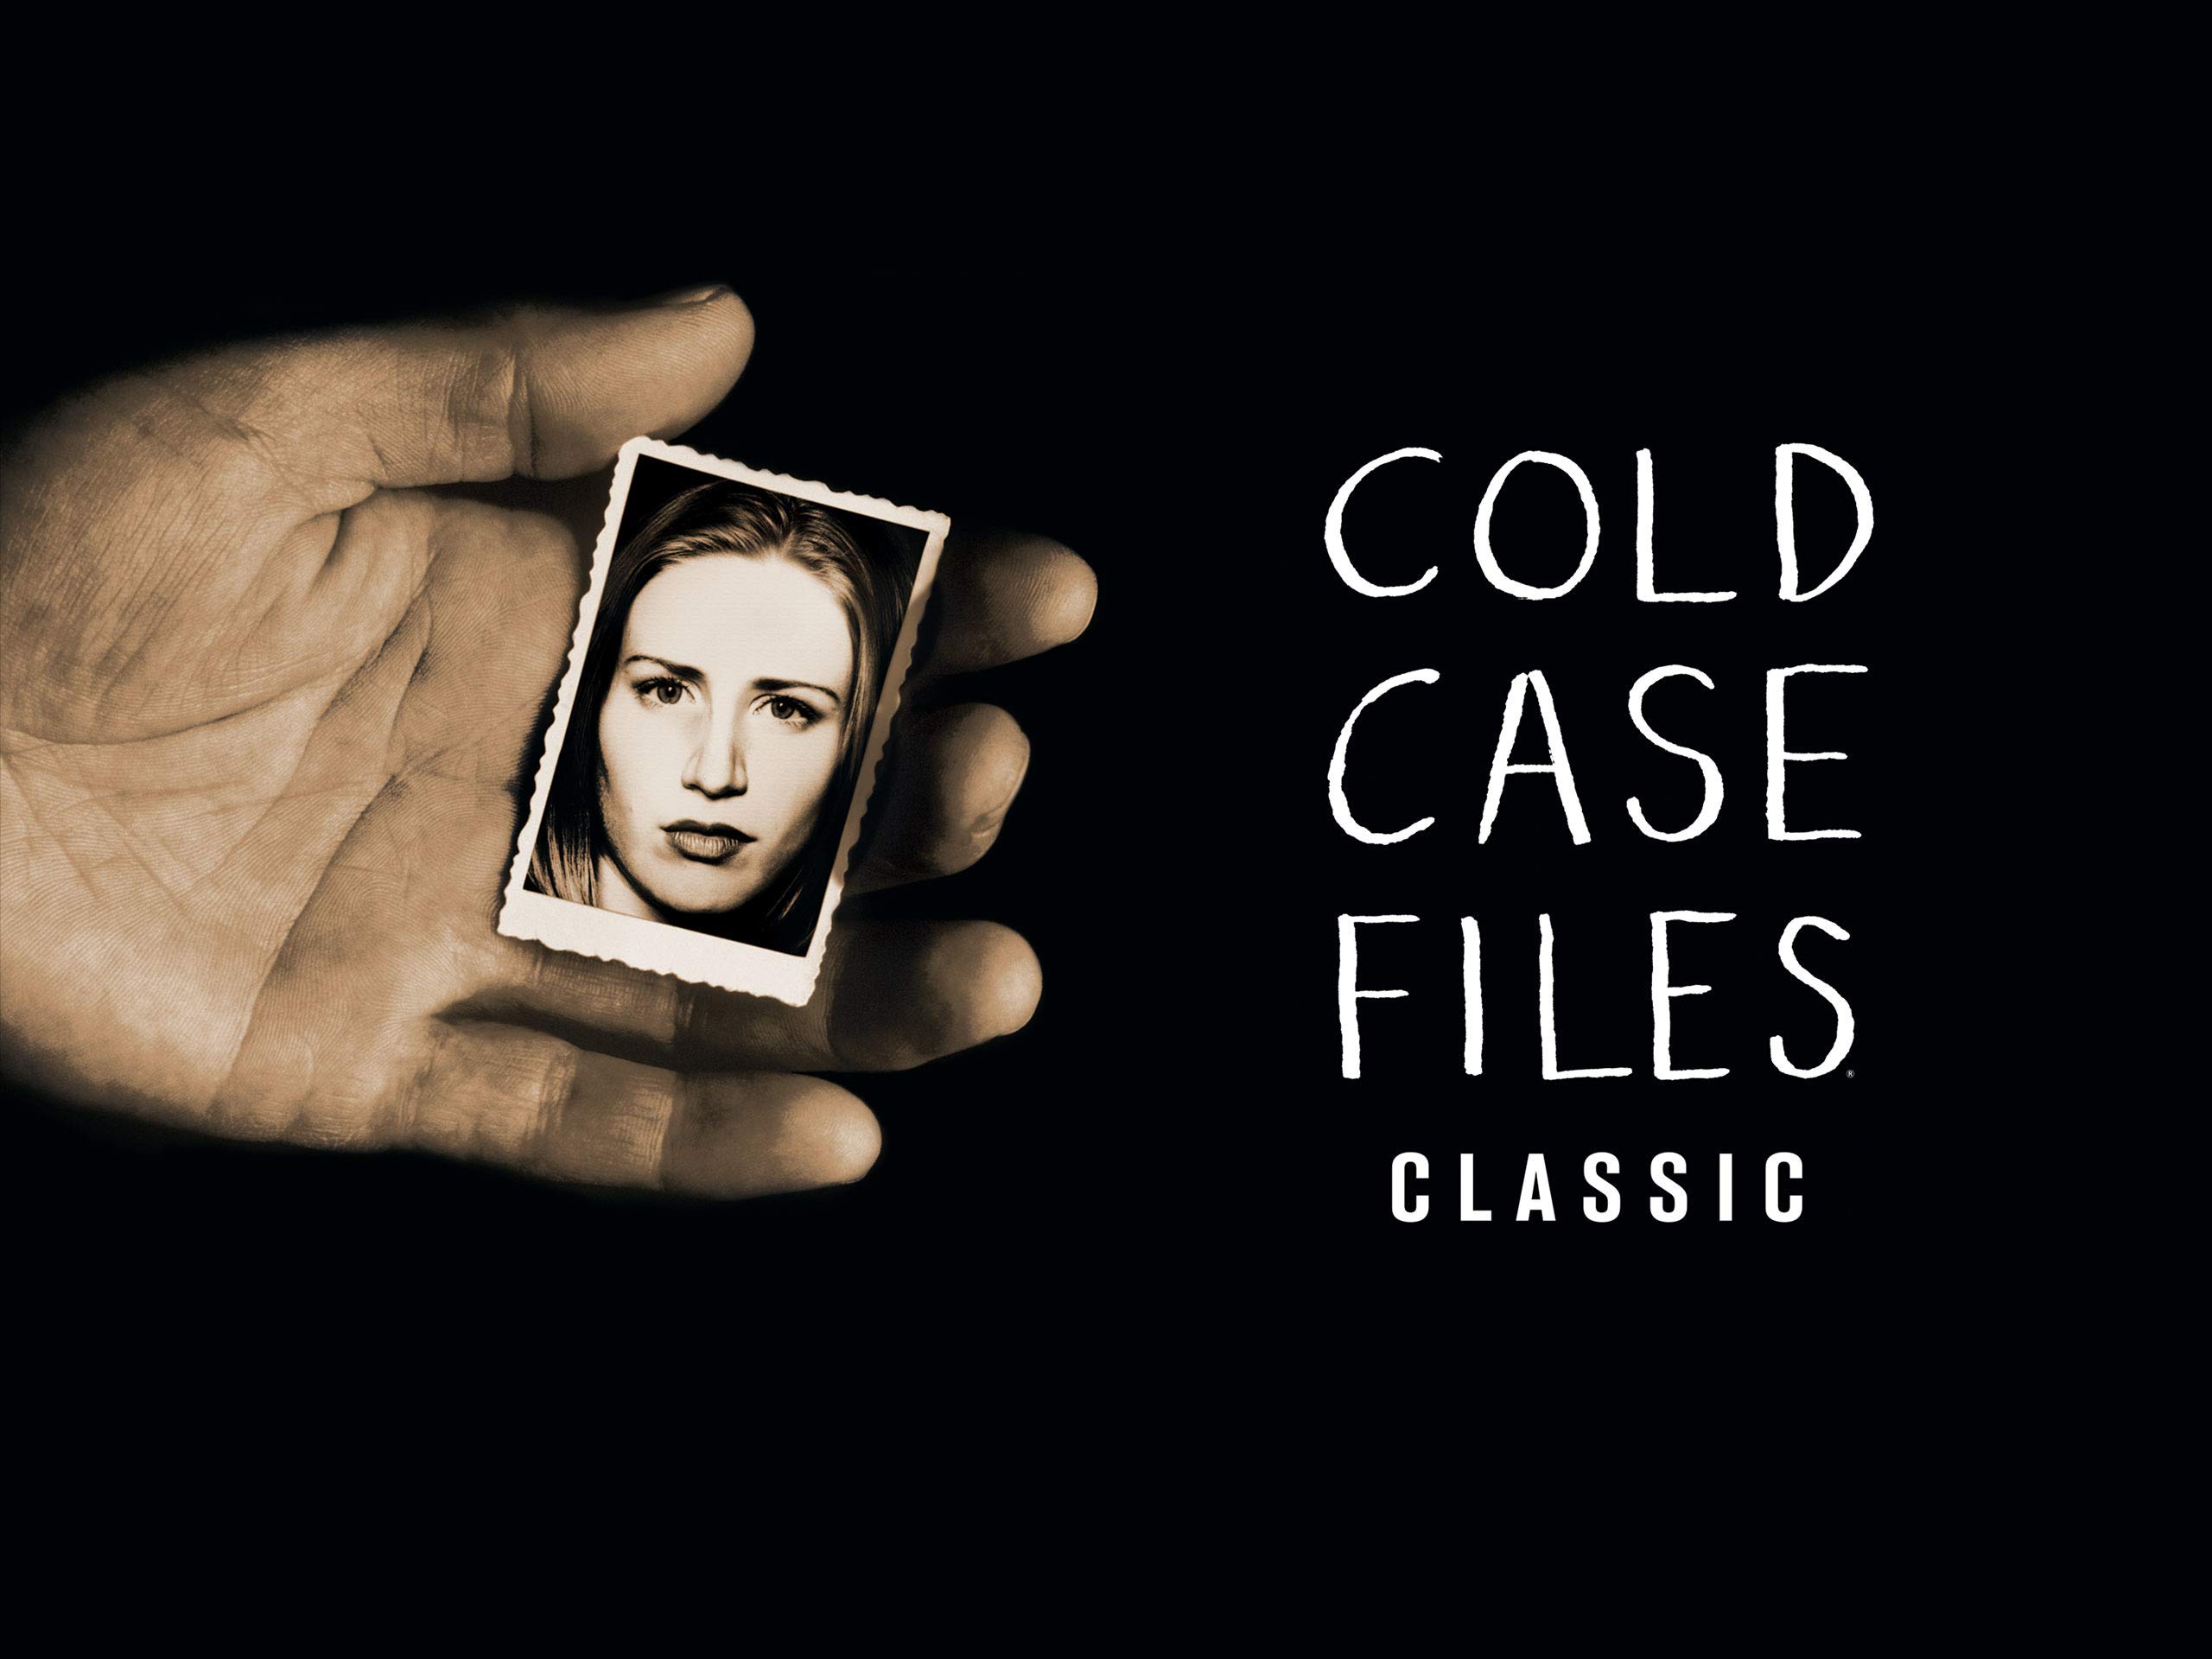 tina faelz cold case files